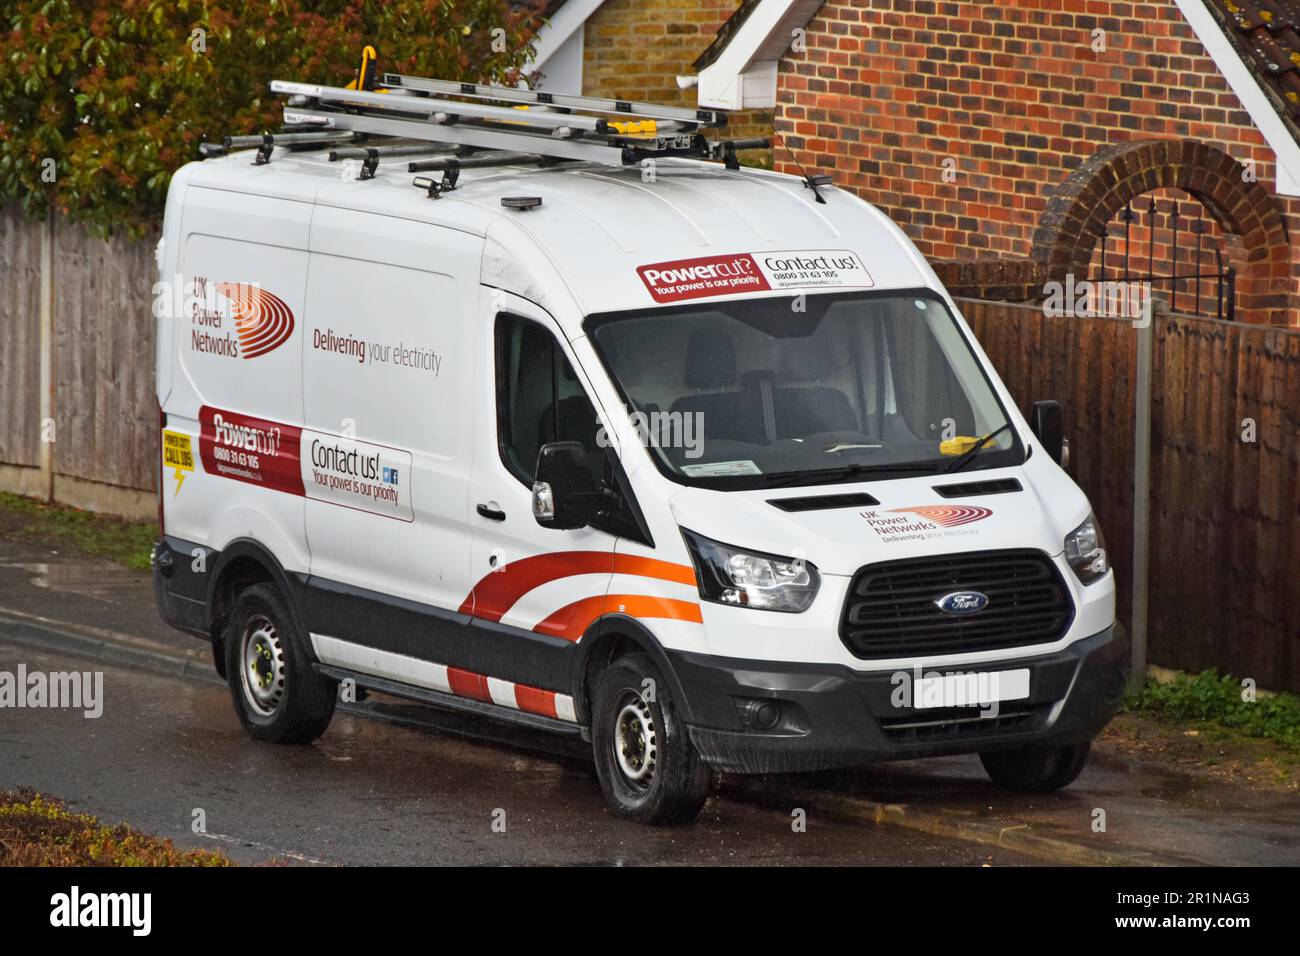 Ford Transit van UK Power Networks liefert Ihre Elektrizität und zeigt Kontaktinformationen zu Nutzfahrzeugen an, die in einer Wohnstraße geparkt sind Stockfoto